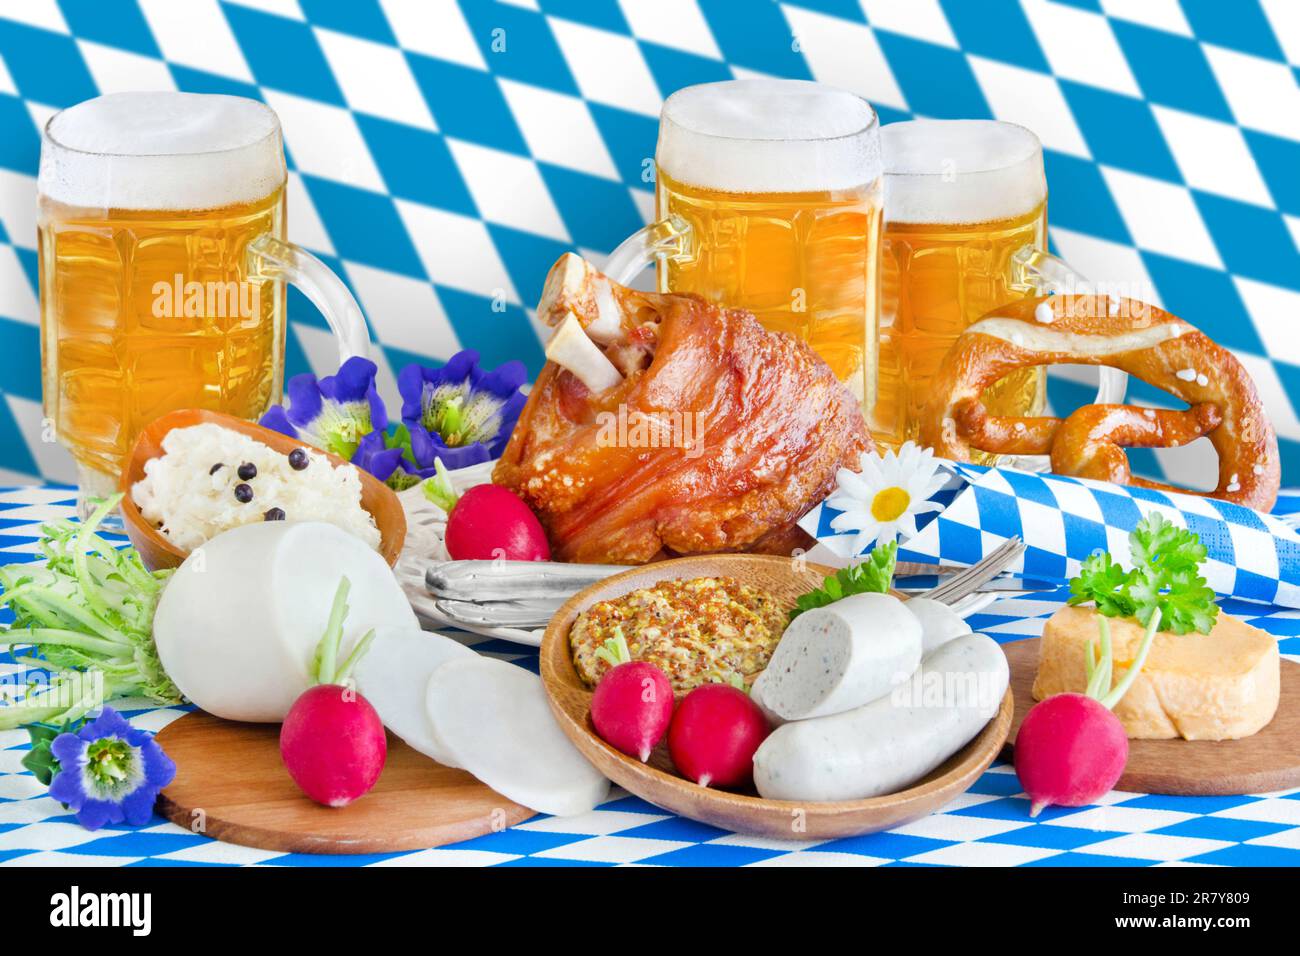 Oktoberfest mit Bier, Haxe, Weisswurst, Radi und Bayerische Flagge blau weiß im Hintergrund Stock Photo